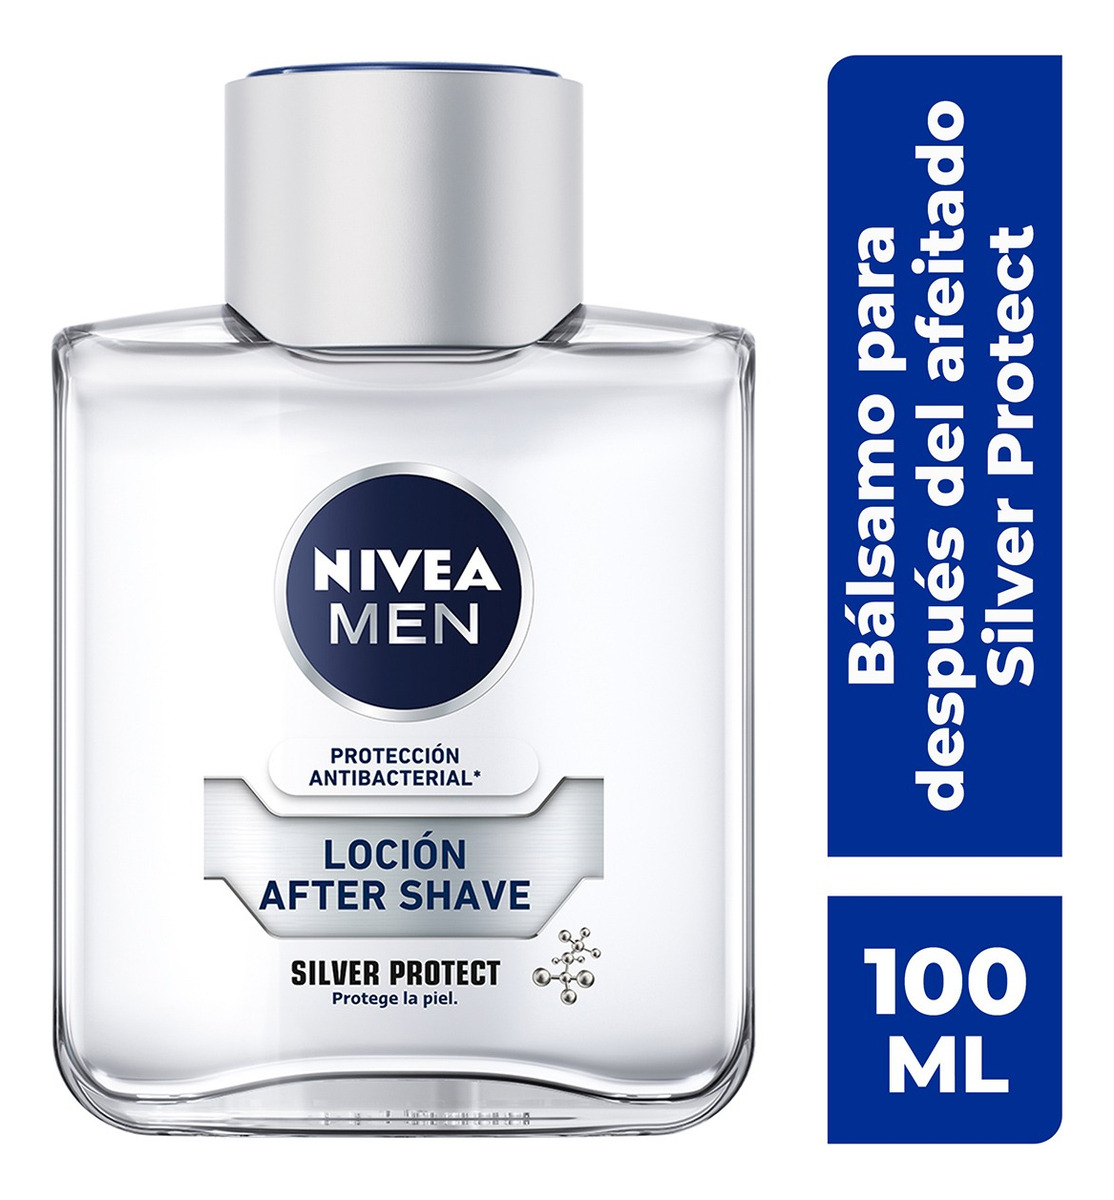 After Shave En Loción Nivea Men Silver Protect Antibacterial 100ml